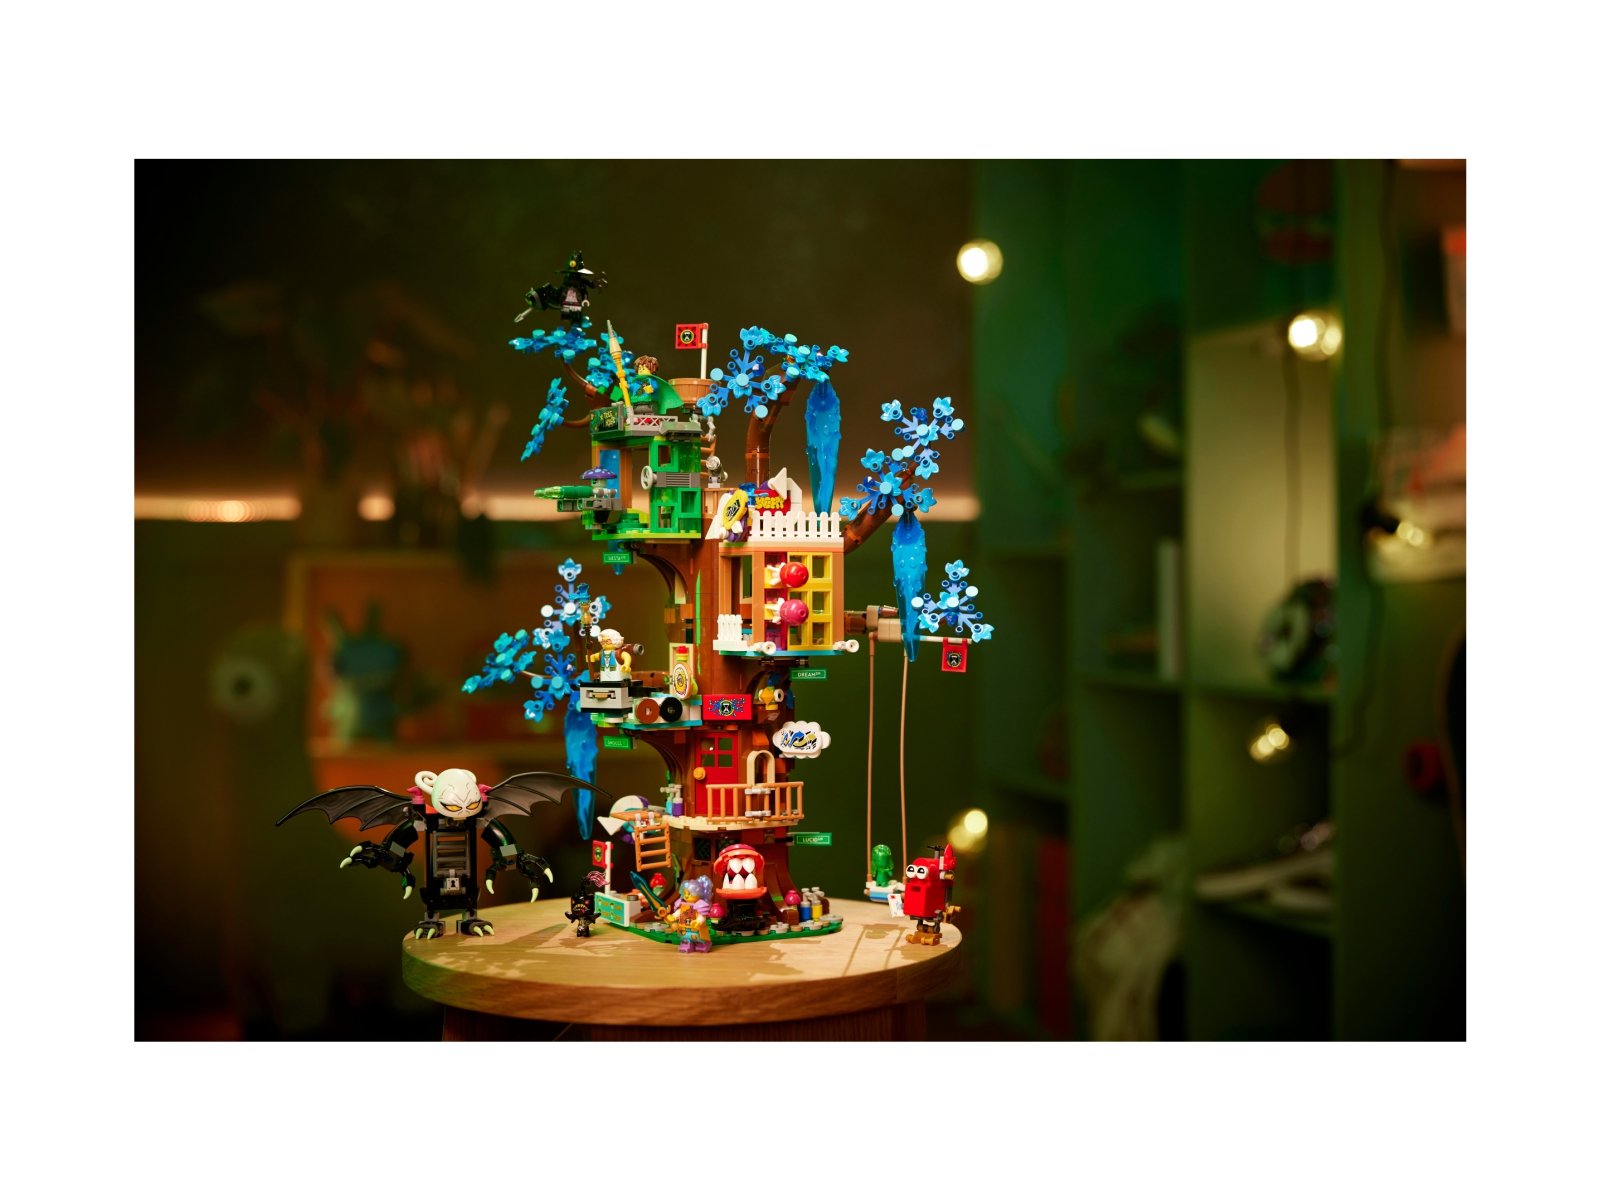 LEGO 71461 Fantastyczny domek na drzewie